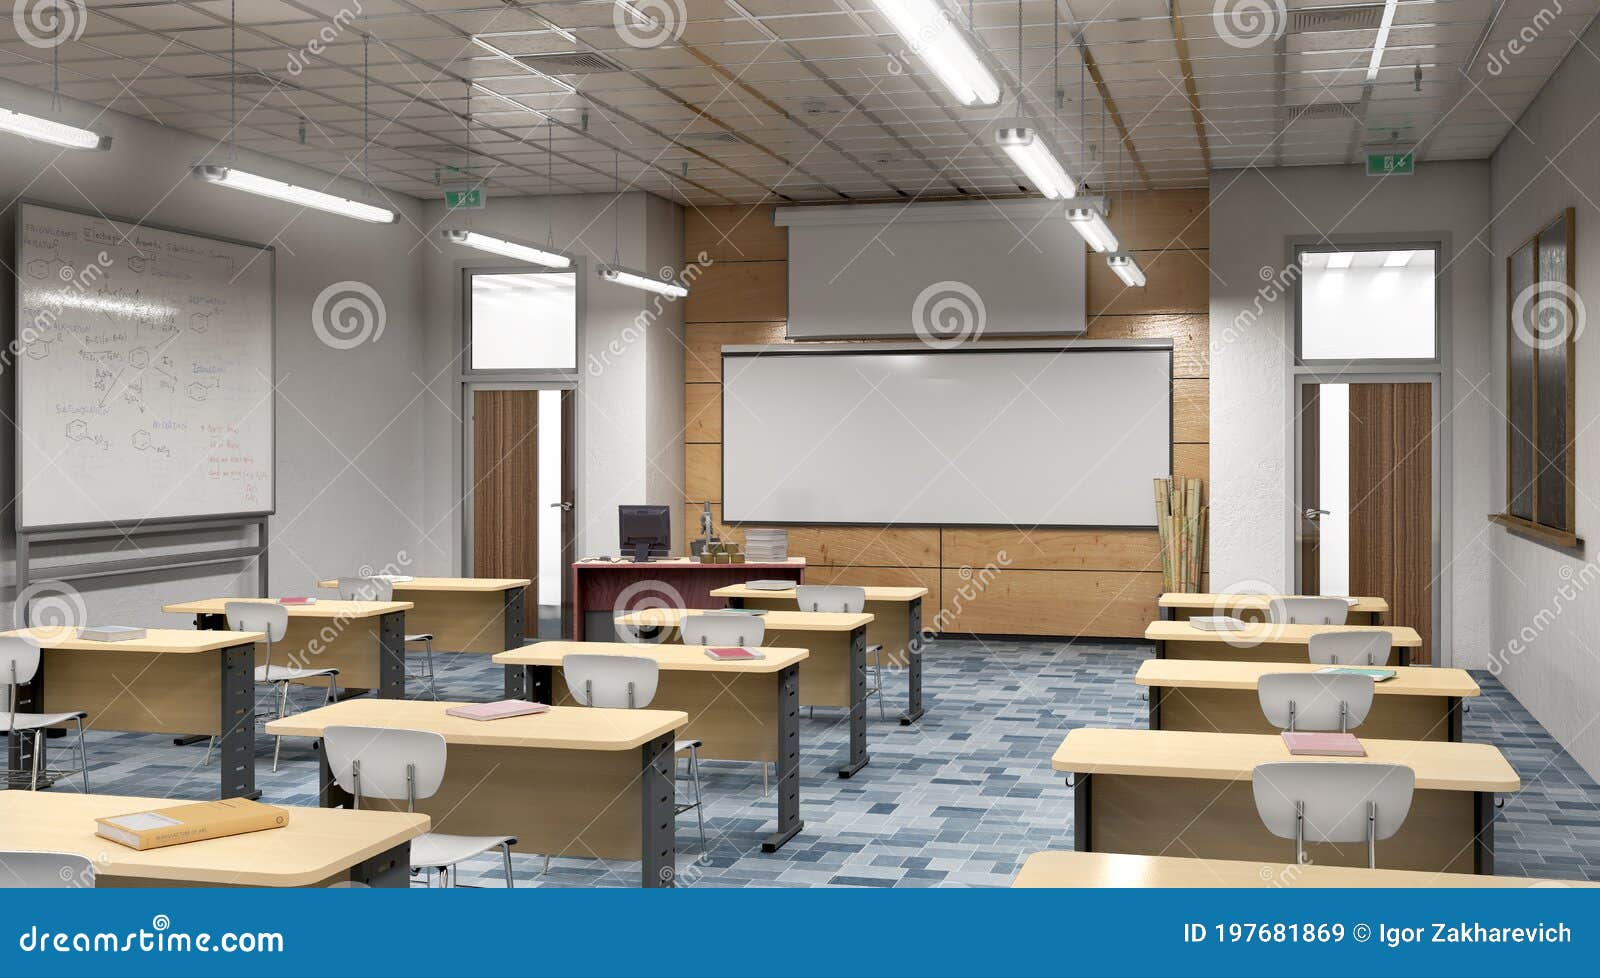 modern classroom design